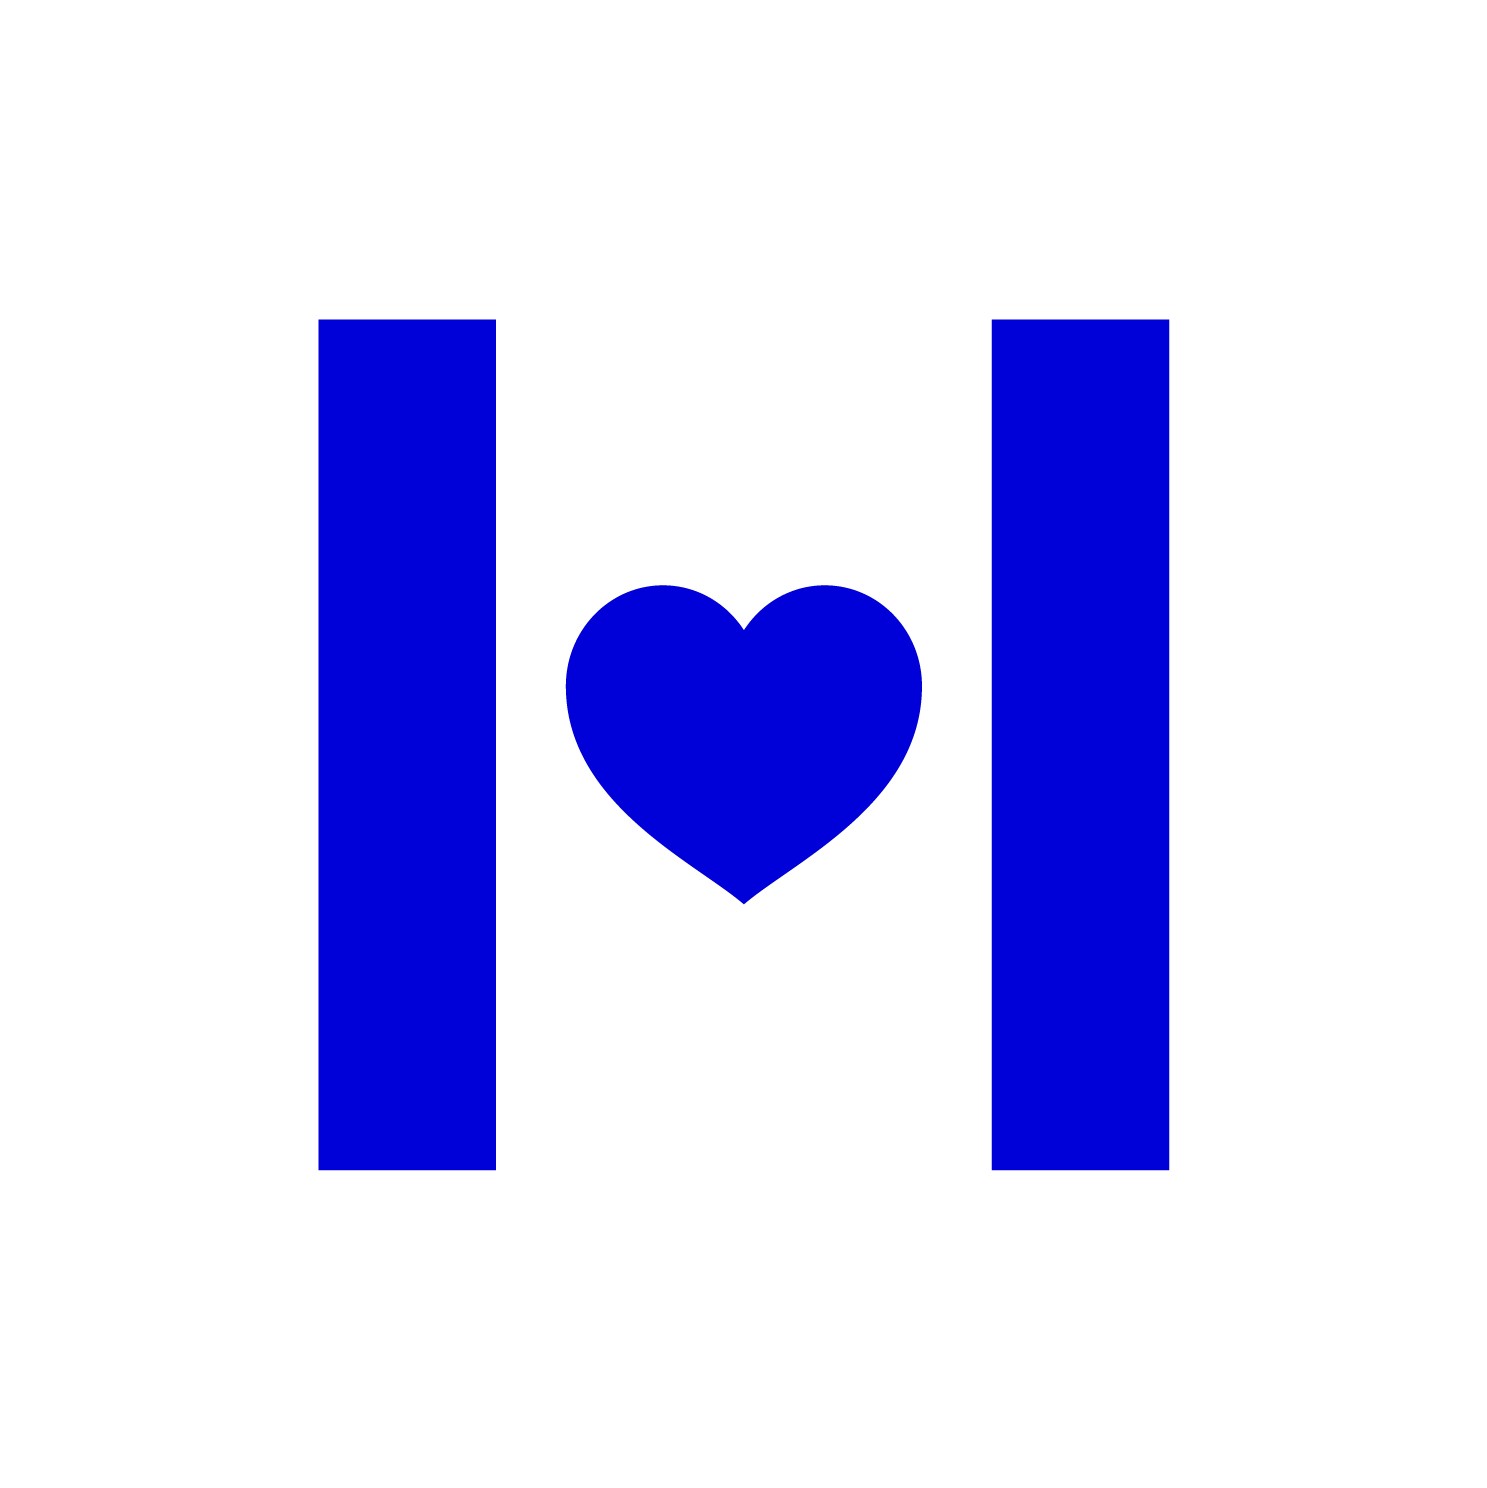 Halo company logo